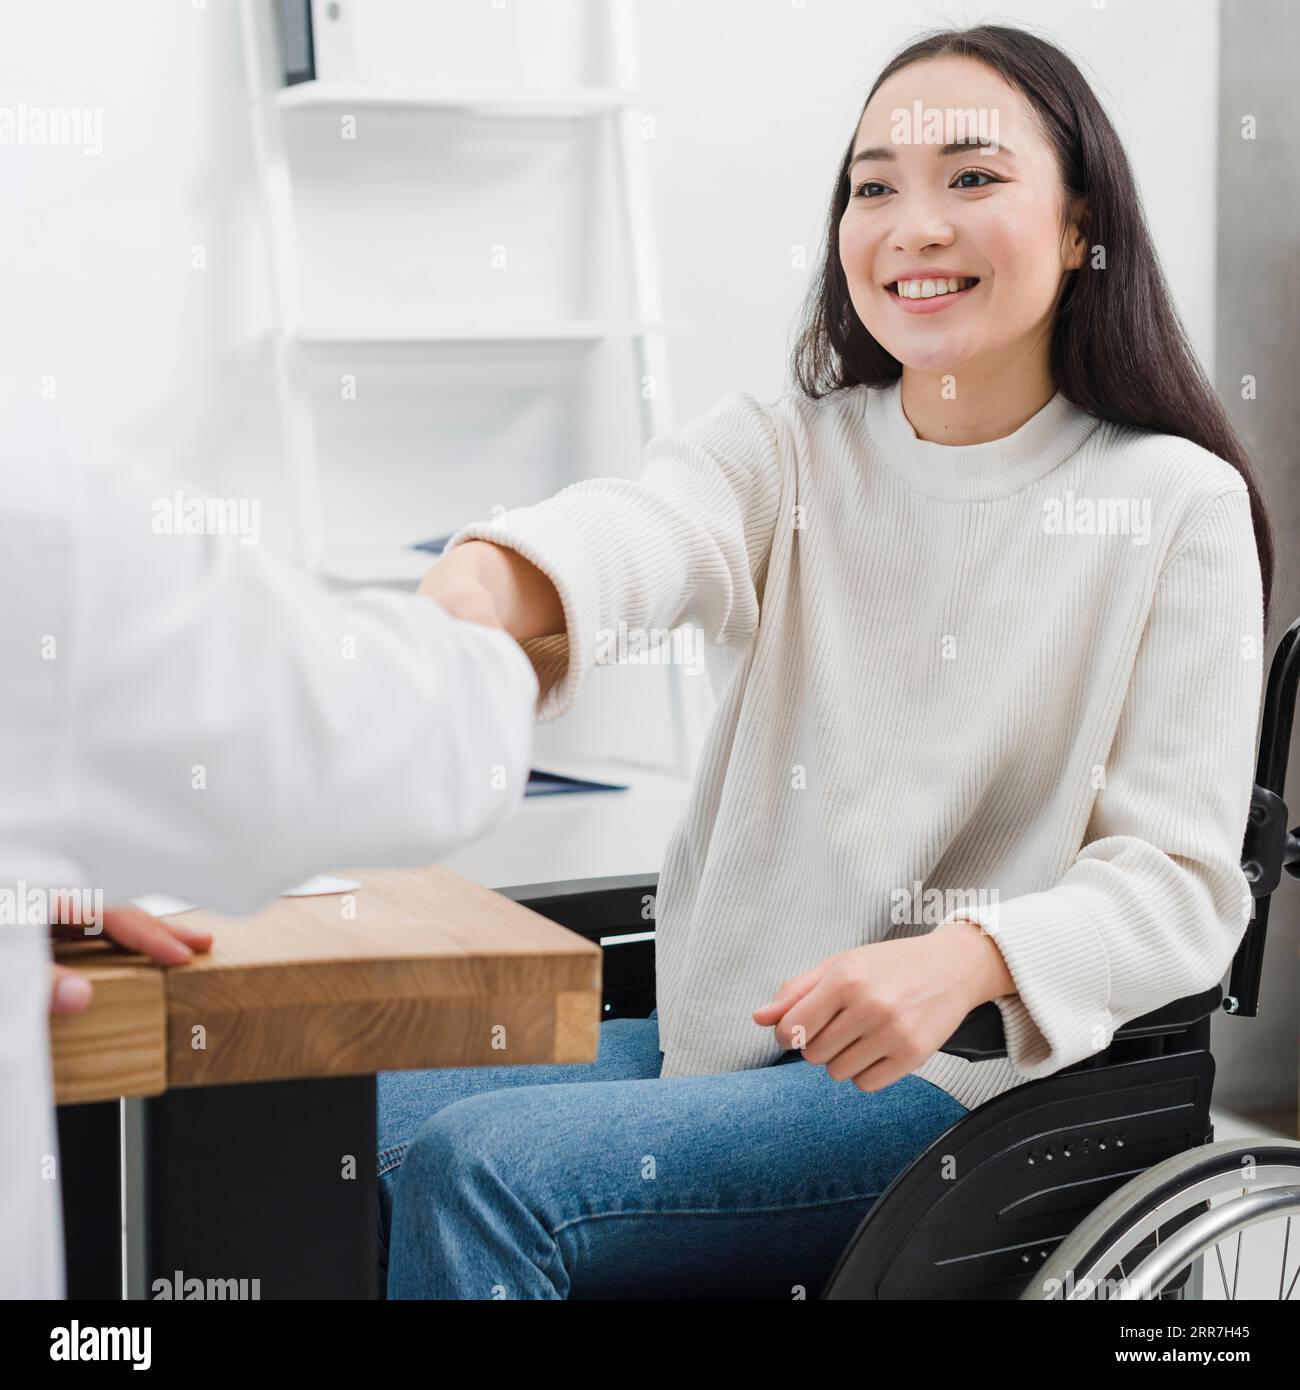 Lächelndes Porträt behinderte junge Frau, die im Rollstuhl sitzt und mit der Person am Arbeitsplatz die Hände schüttelt Stockfoto